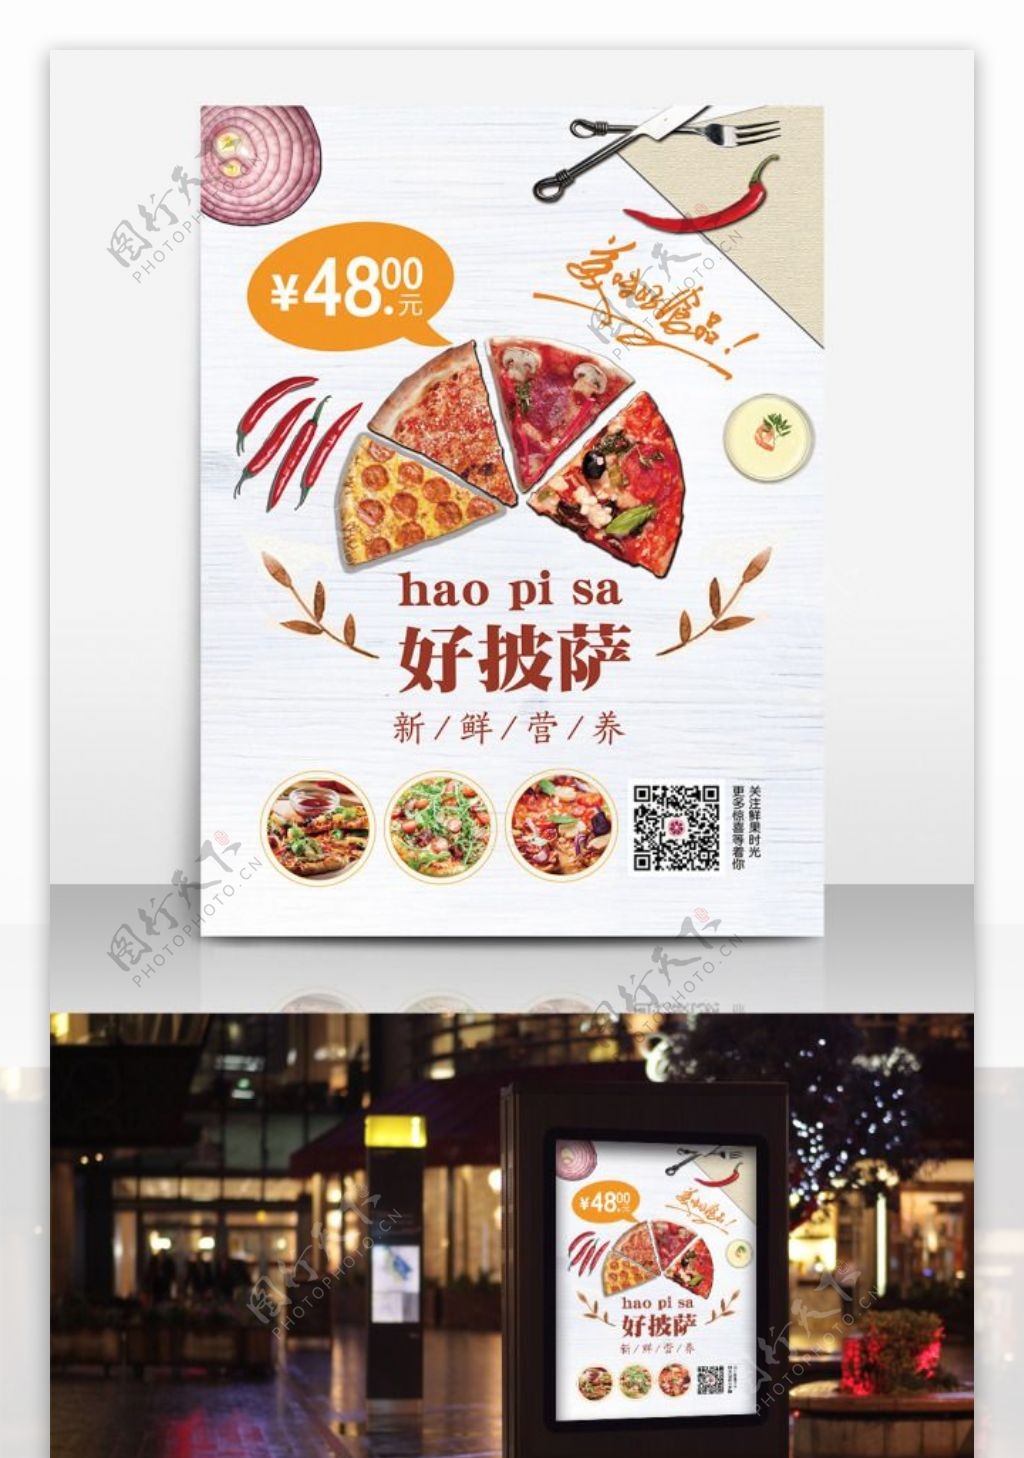 美食披萨PIZZA菜单宣传海报餐饮店海报